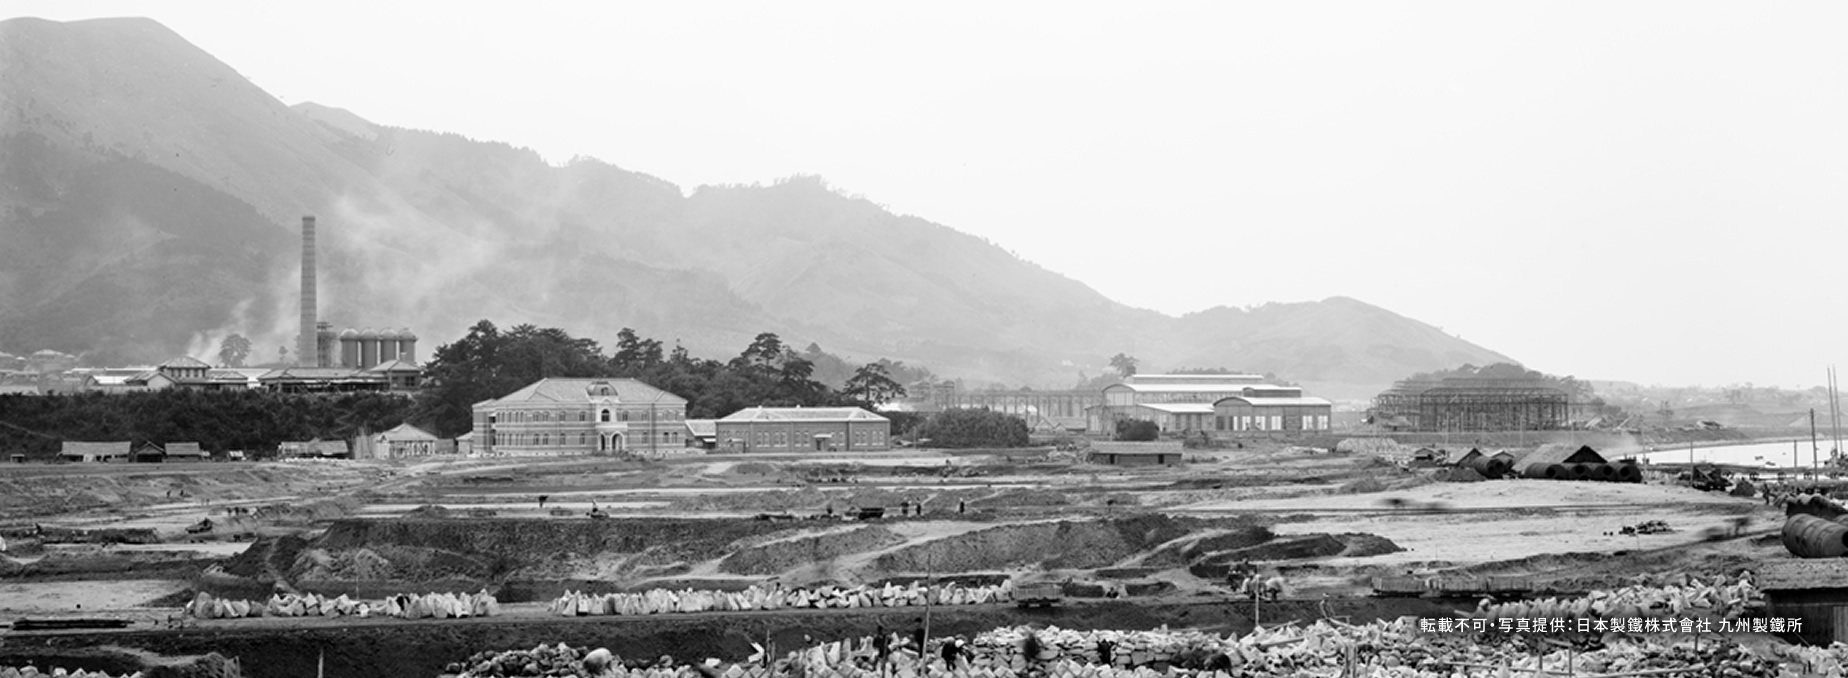 照片:世界遺產的構成資產 官營八幡製鐵所相關設施 2